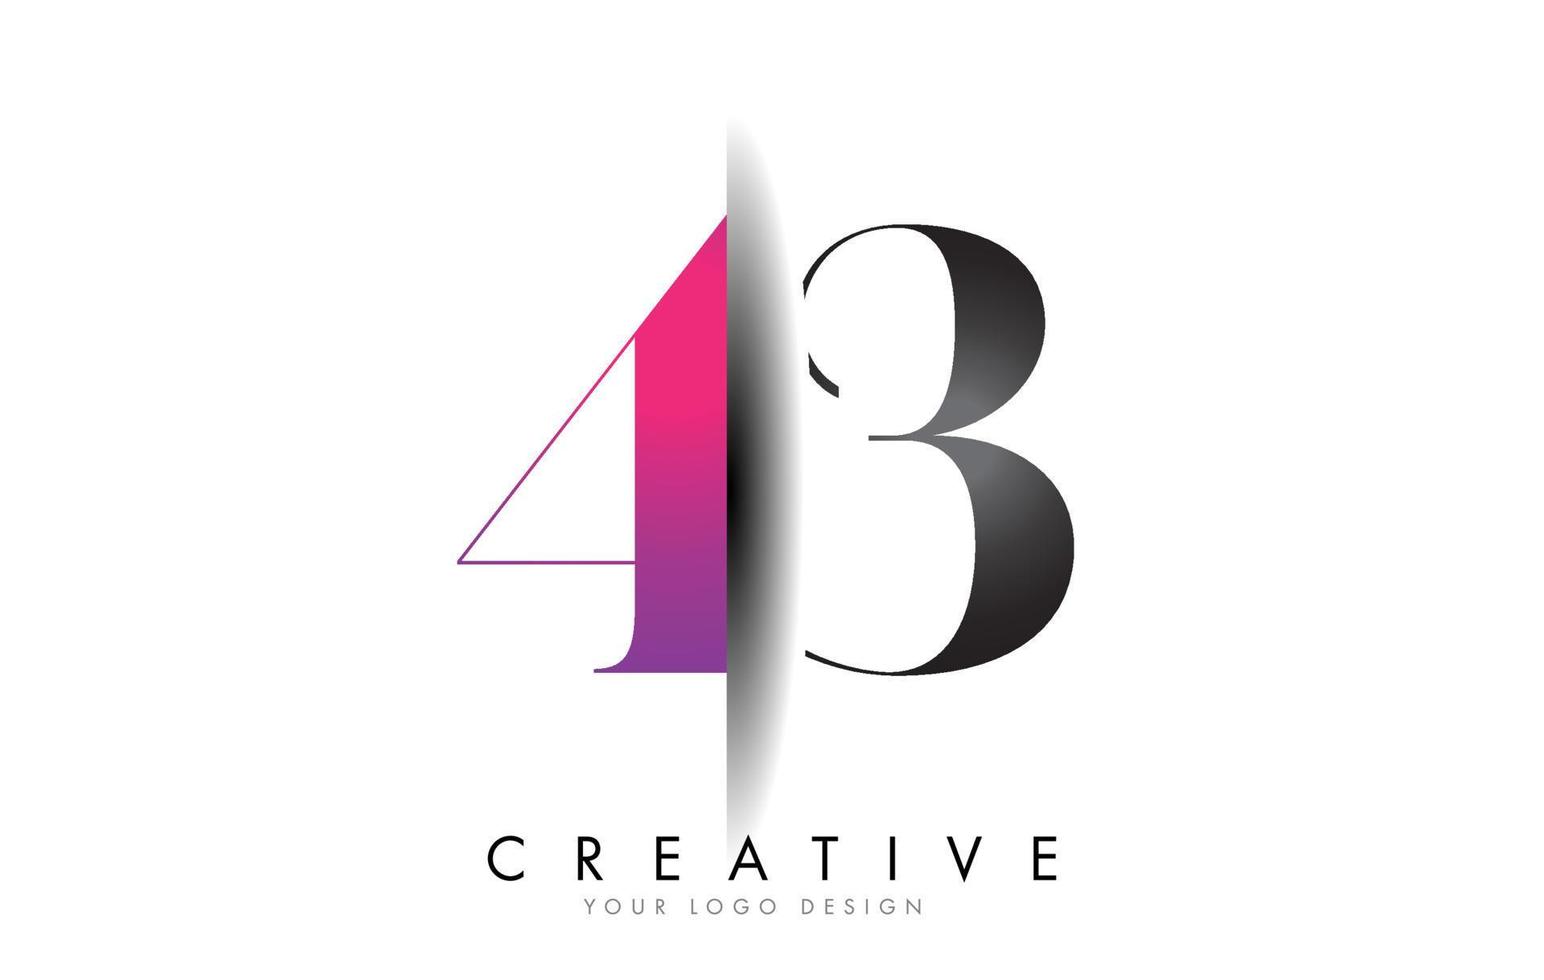 43 4 3 logotipo de número gris y rosa con vector de corte de sombra creativa.